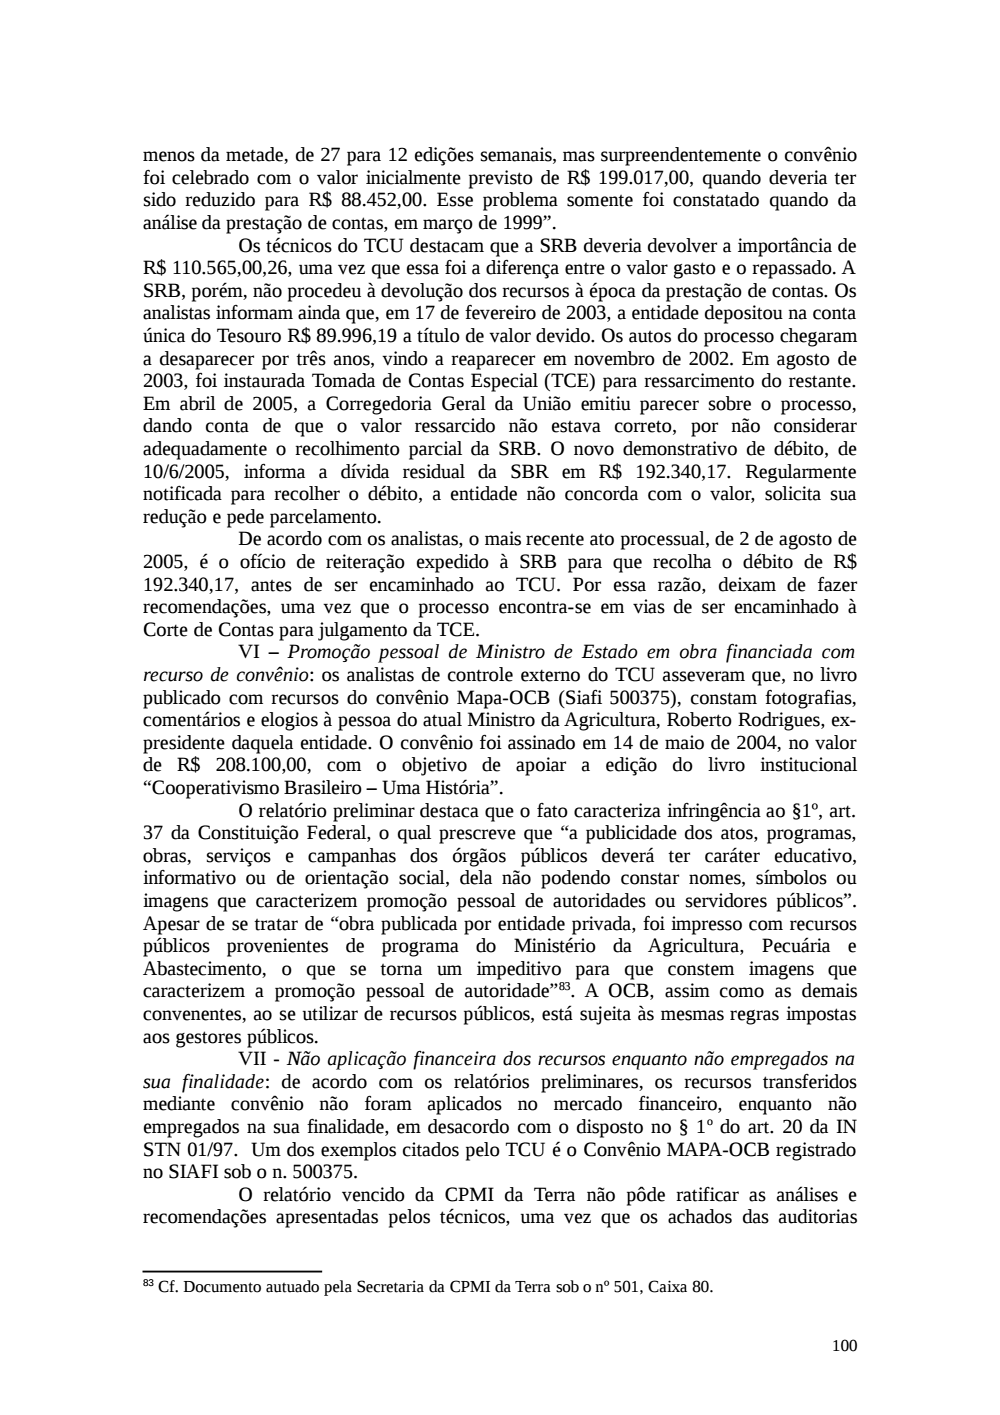 Page 100 from Relatório final da comissão